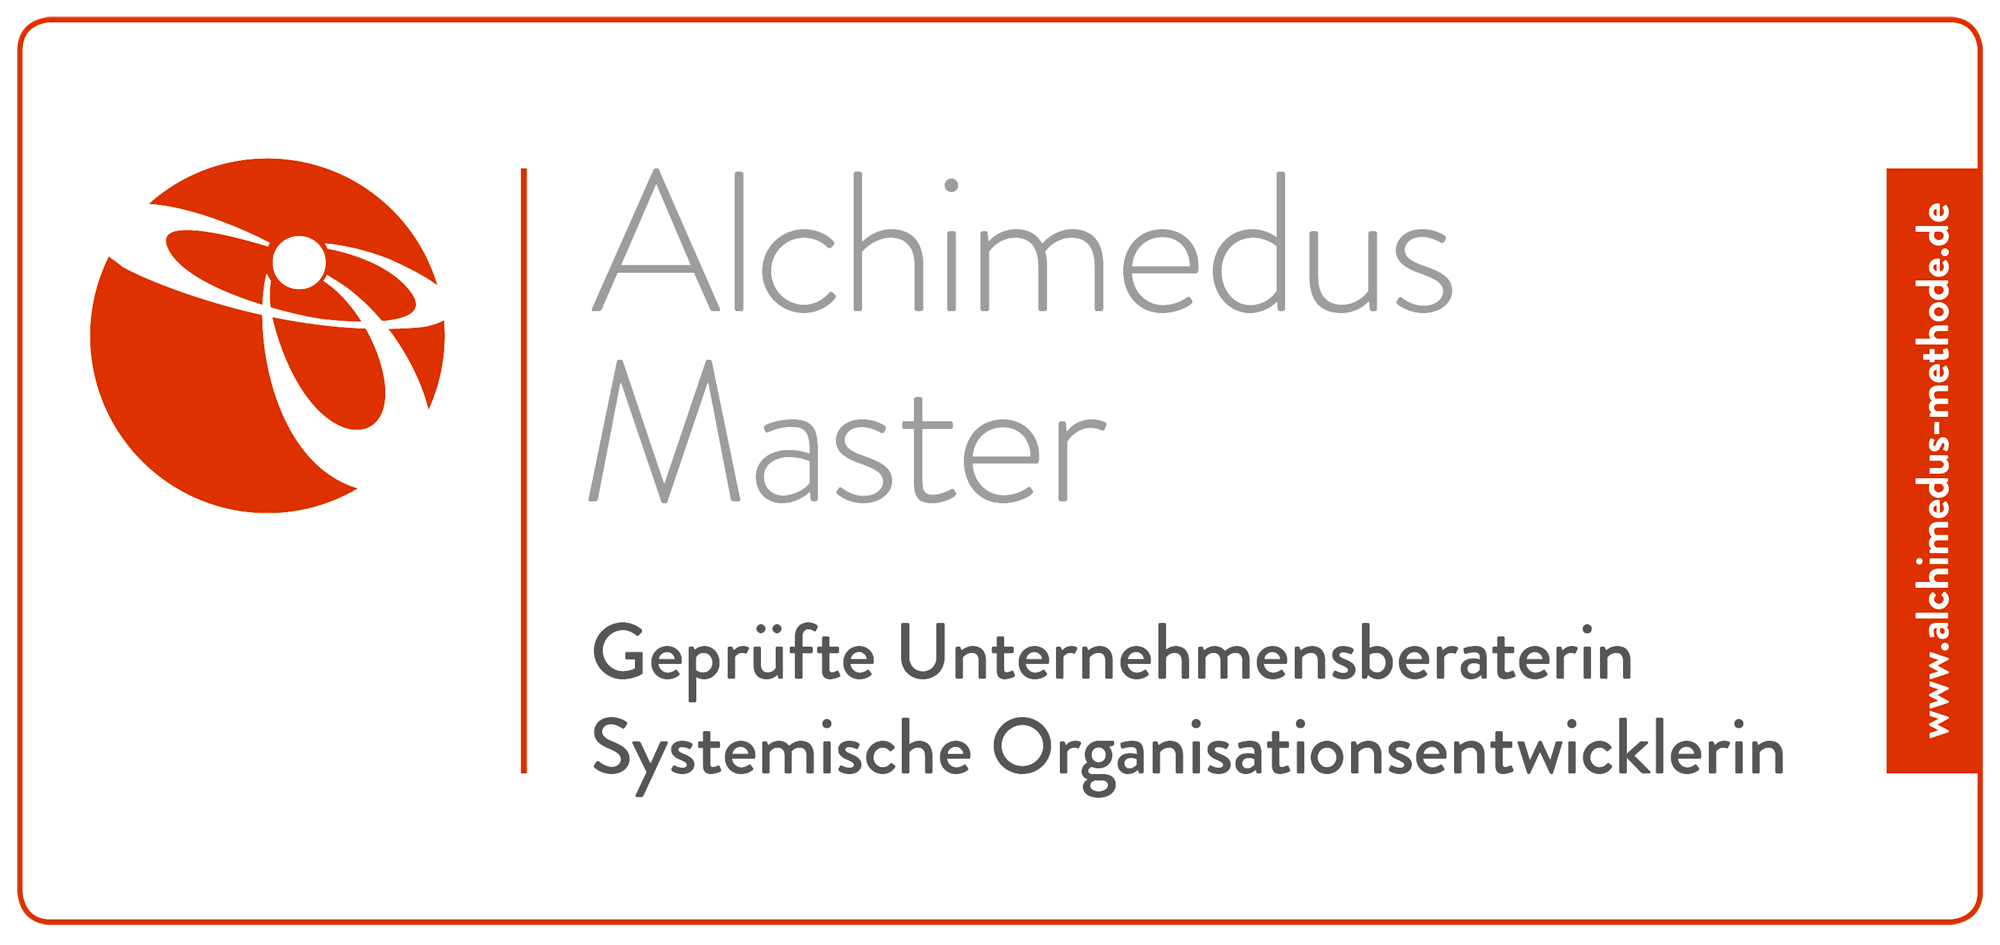 Alchimedus Master. Geprüfte Unternehmerin. Systemische Organisationsentwicklerin